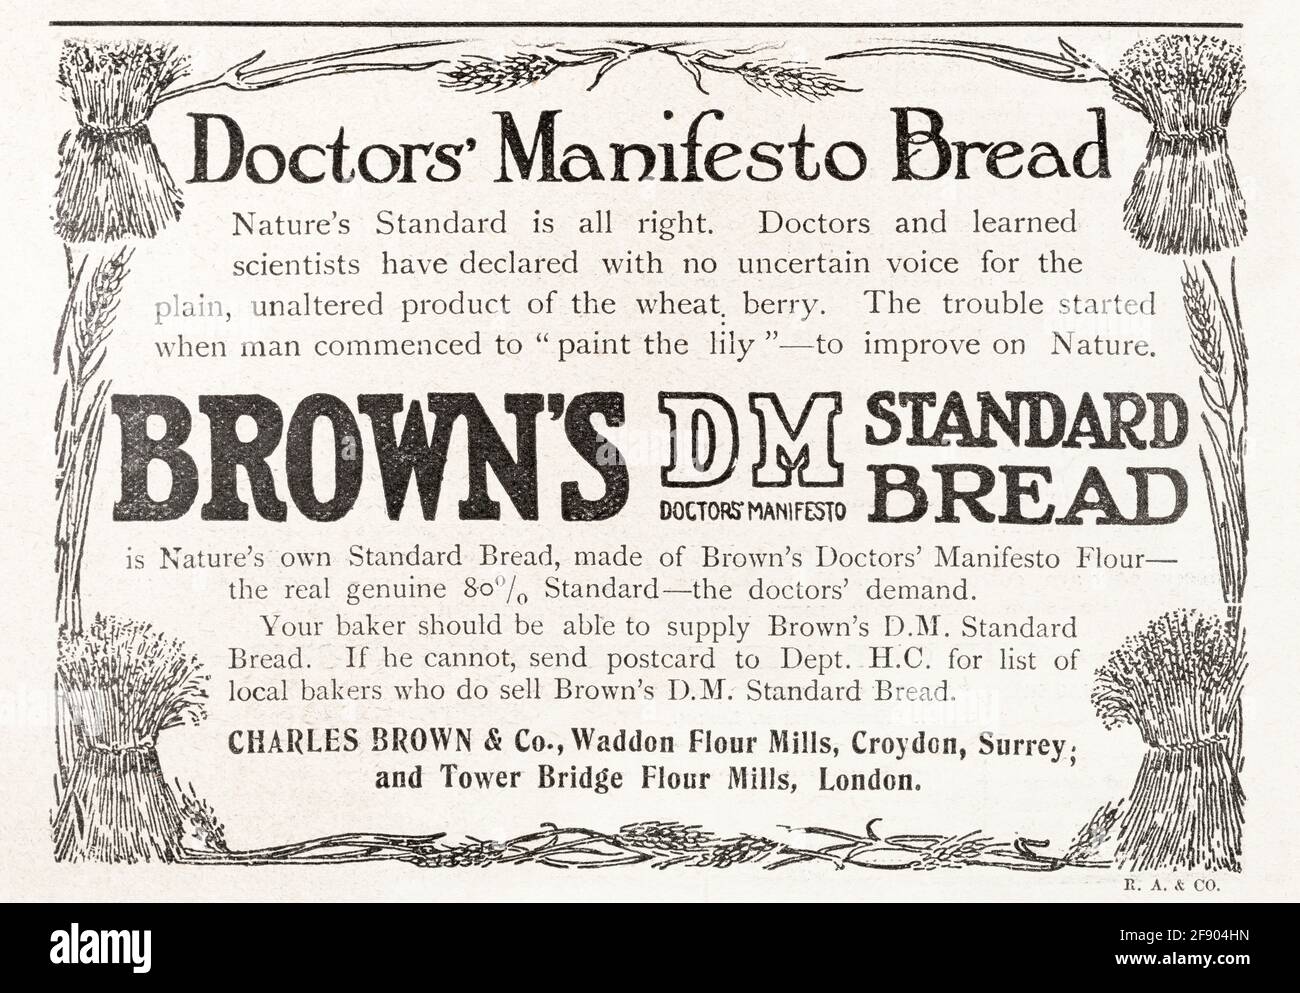 Alte Vintage-Werbung des edwardianischen Magazins Brown's Doctor's Manifesto Bread aus dem Jahr 1911, Standards für die Vorwerbung. Geschichte der Werbung, alte Lebensmittel Stockfoto